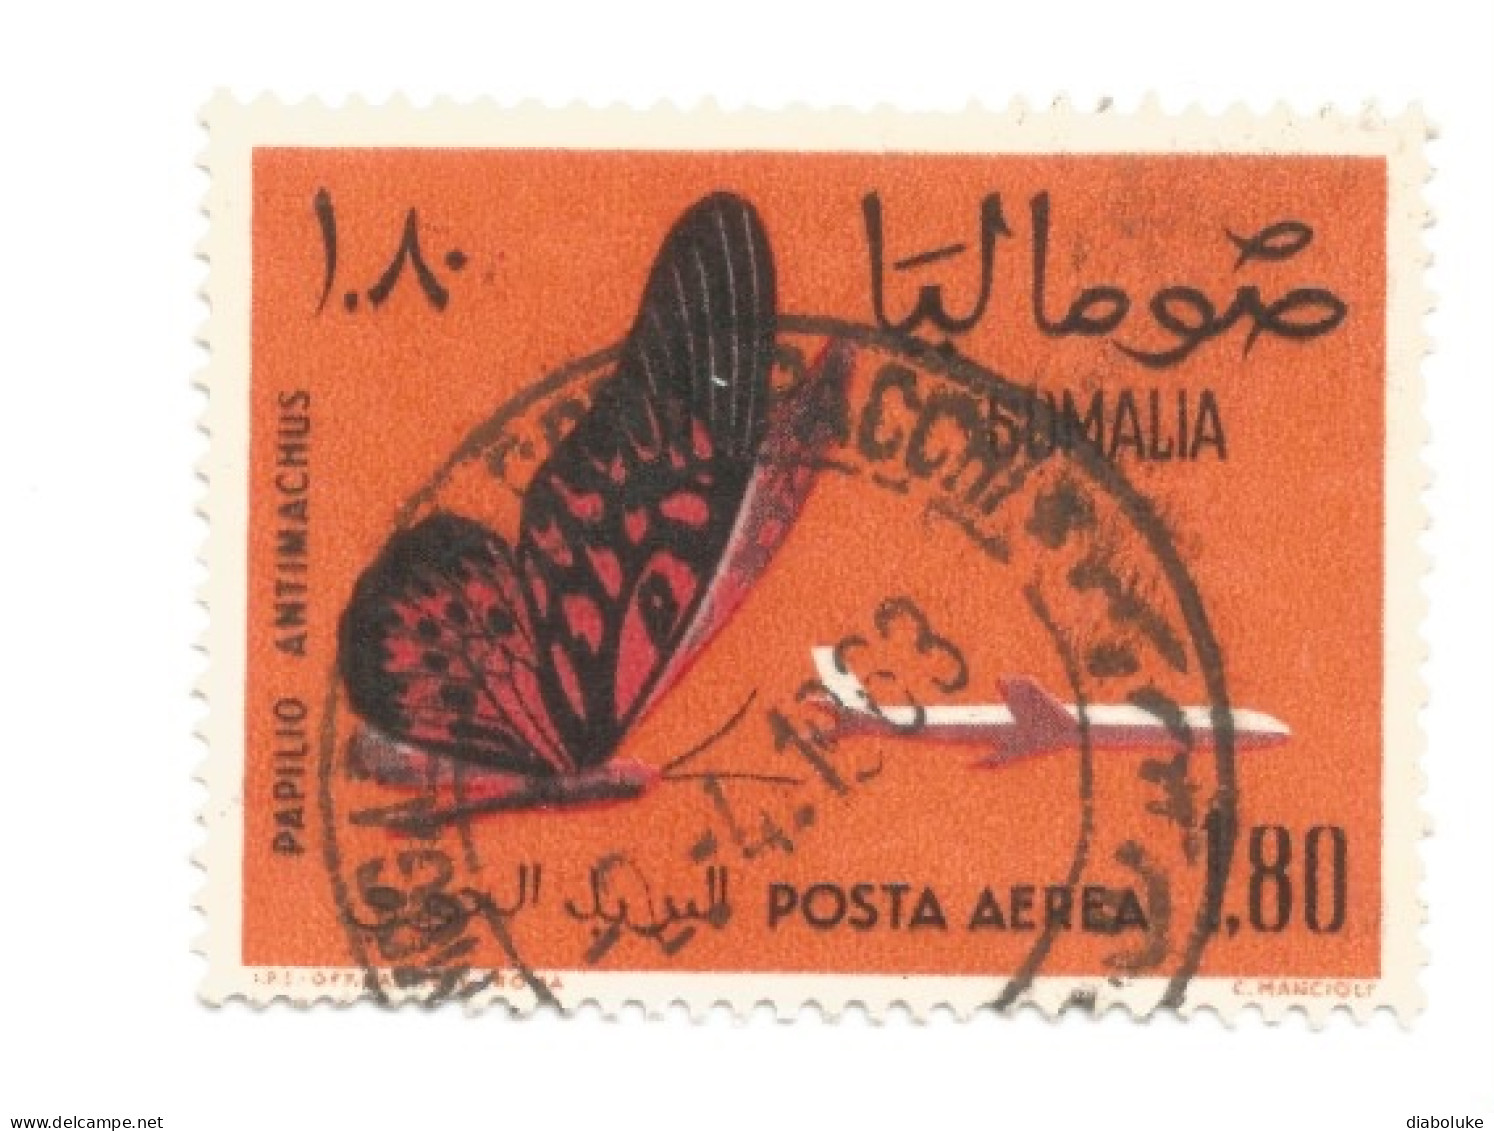 (SOMALIA) 1961, AFRICAN GIANT SWALLOWTAIL, PAPILIO ANTIMACHUS - 1 Francobollo Usato - Somalia (1960-...)